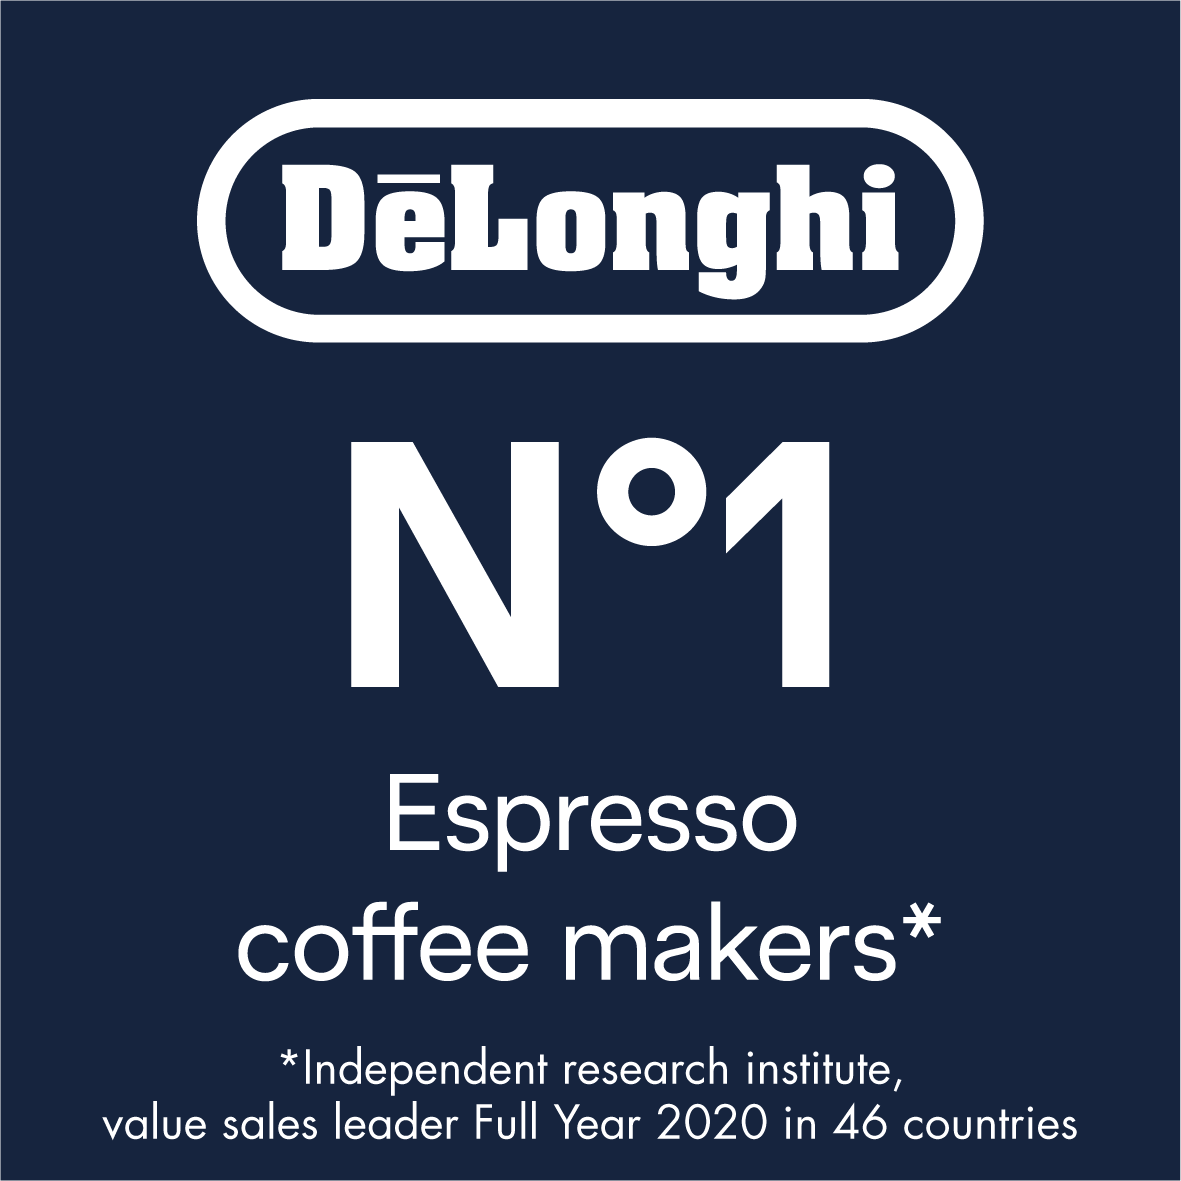 De' Longhi N.1 Coffee Makers